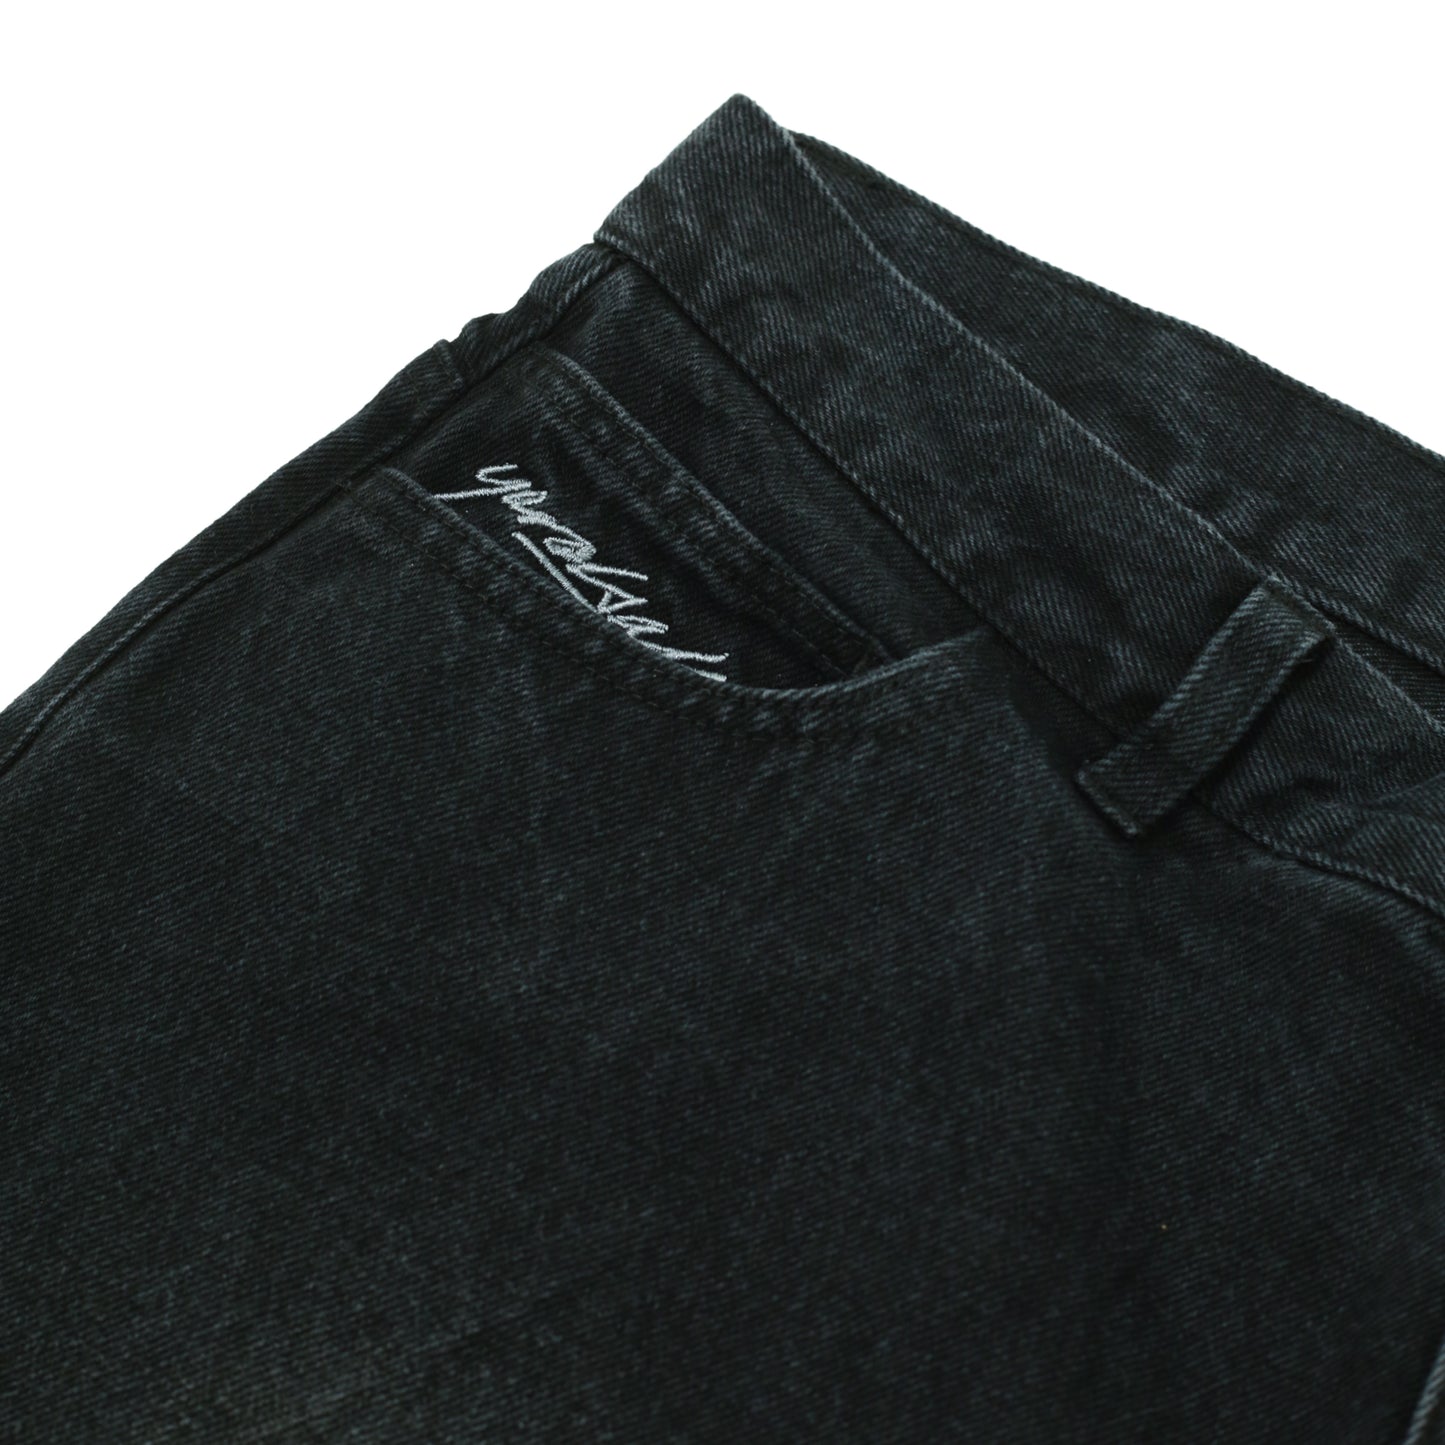 Faded Phantasy Jeans (Black)